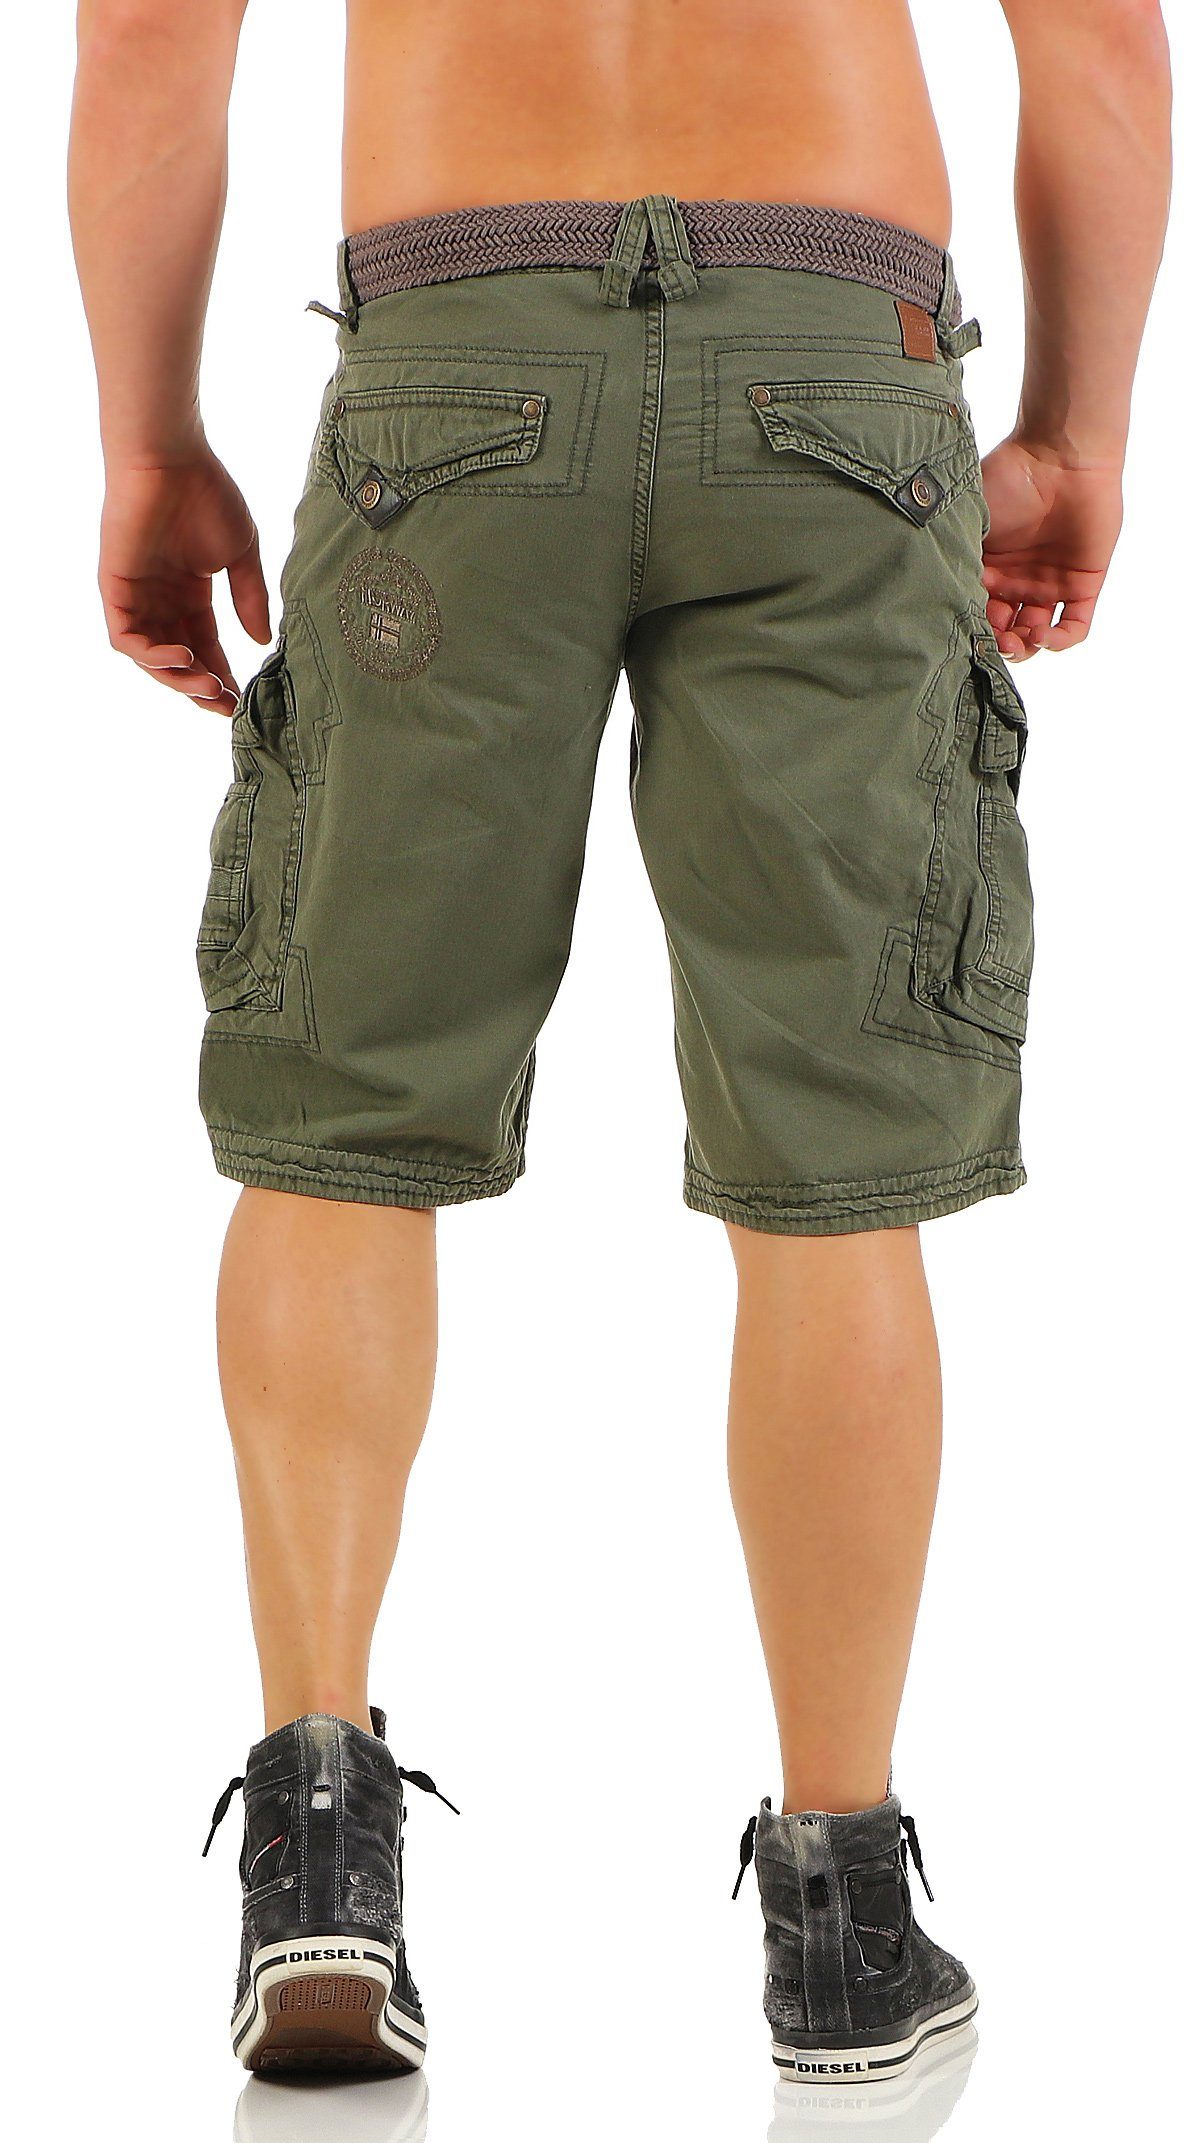 G-PERLE / (mit Shorts, Hose, Geographical abnehmbarem camouflage kurze Norway Herren unifarben Storm Cargoshorts Shorts Gürtel)